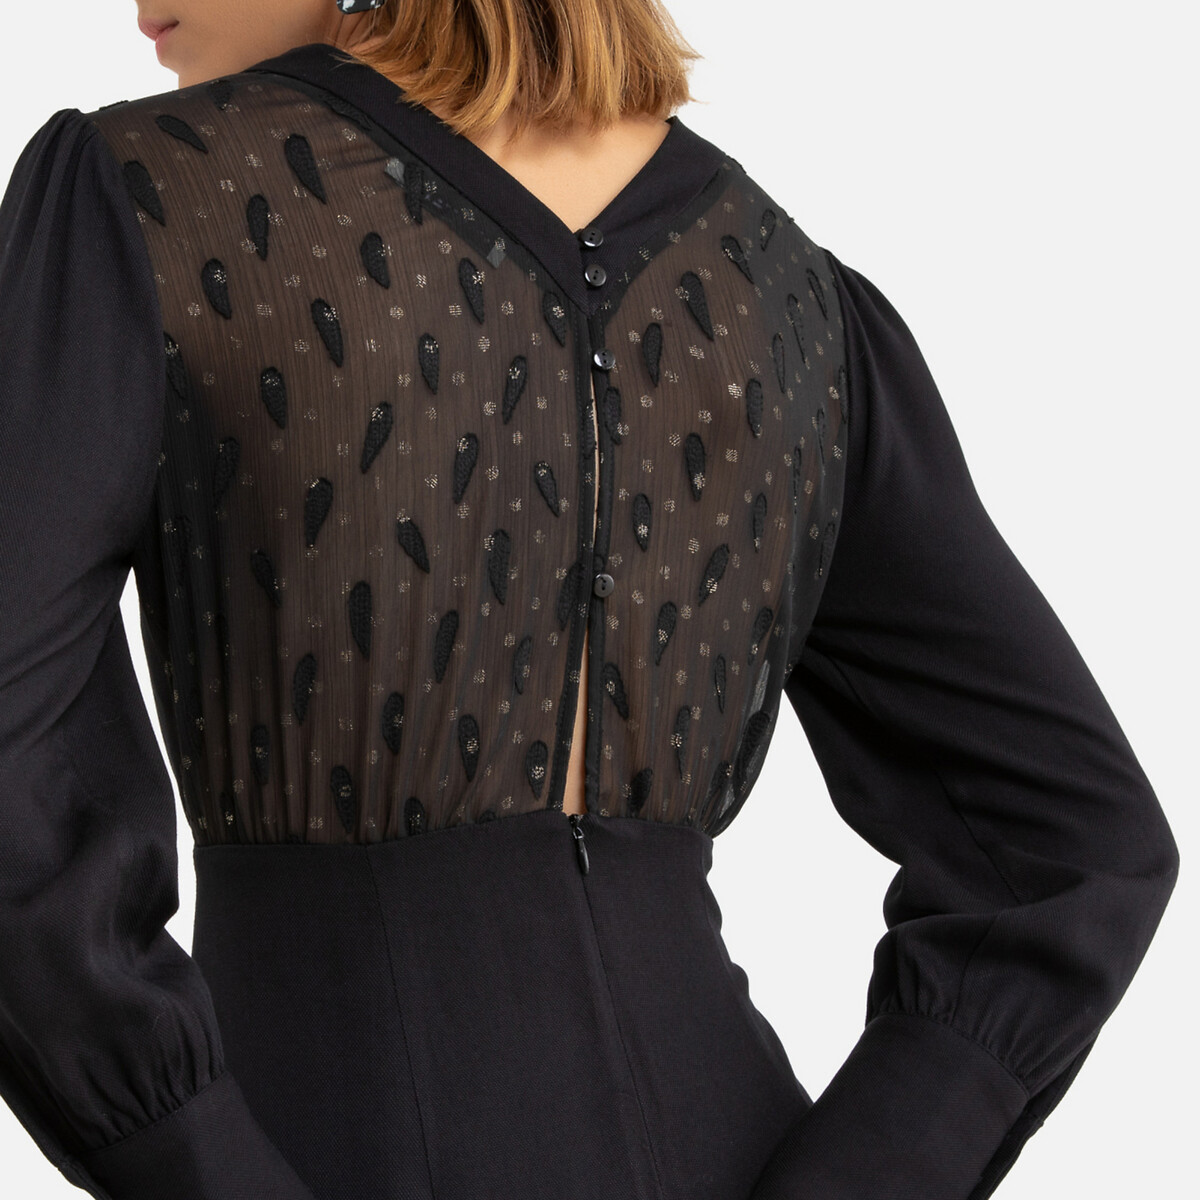 Платье La Redoute Короткое длинные рукава декольте сзади 0(XS) черный, размер 0(XS) Короткое длинные рукава декольте сзади 0(XS) черный - фото 3